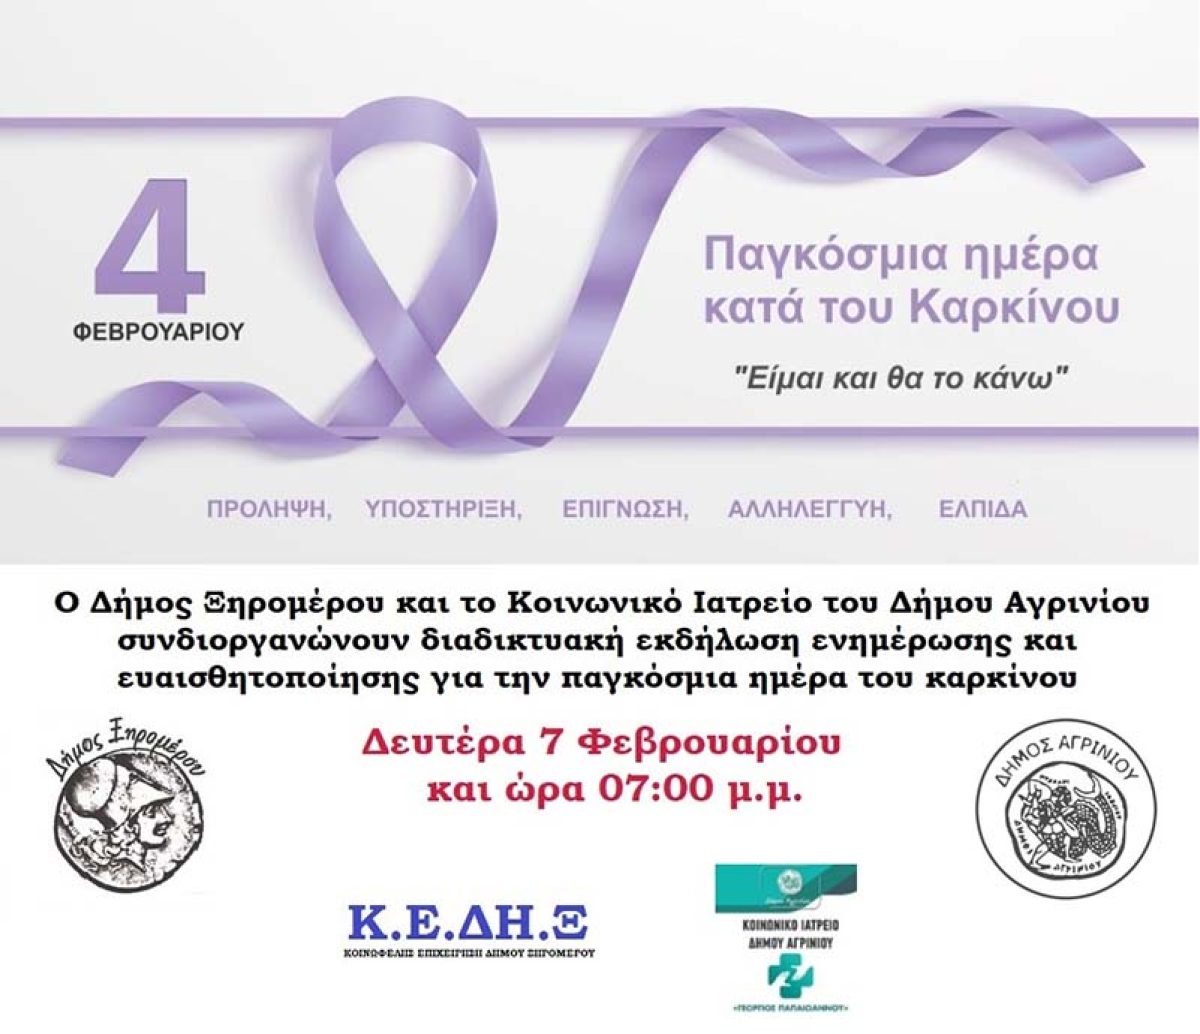 Ξηρόμερο: Διαδικτυακή εκδήλωση για την παγκόσμια ημέρα του καρκίνου (Δευ 7/2/2022 19:00)